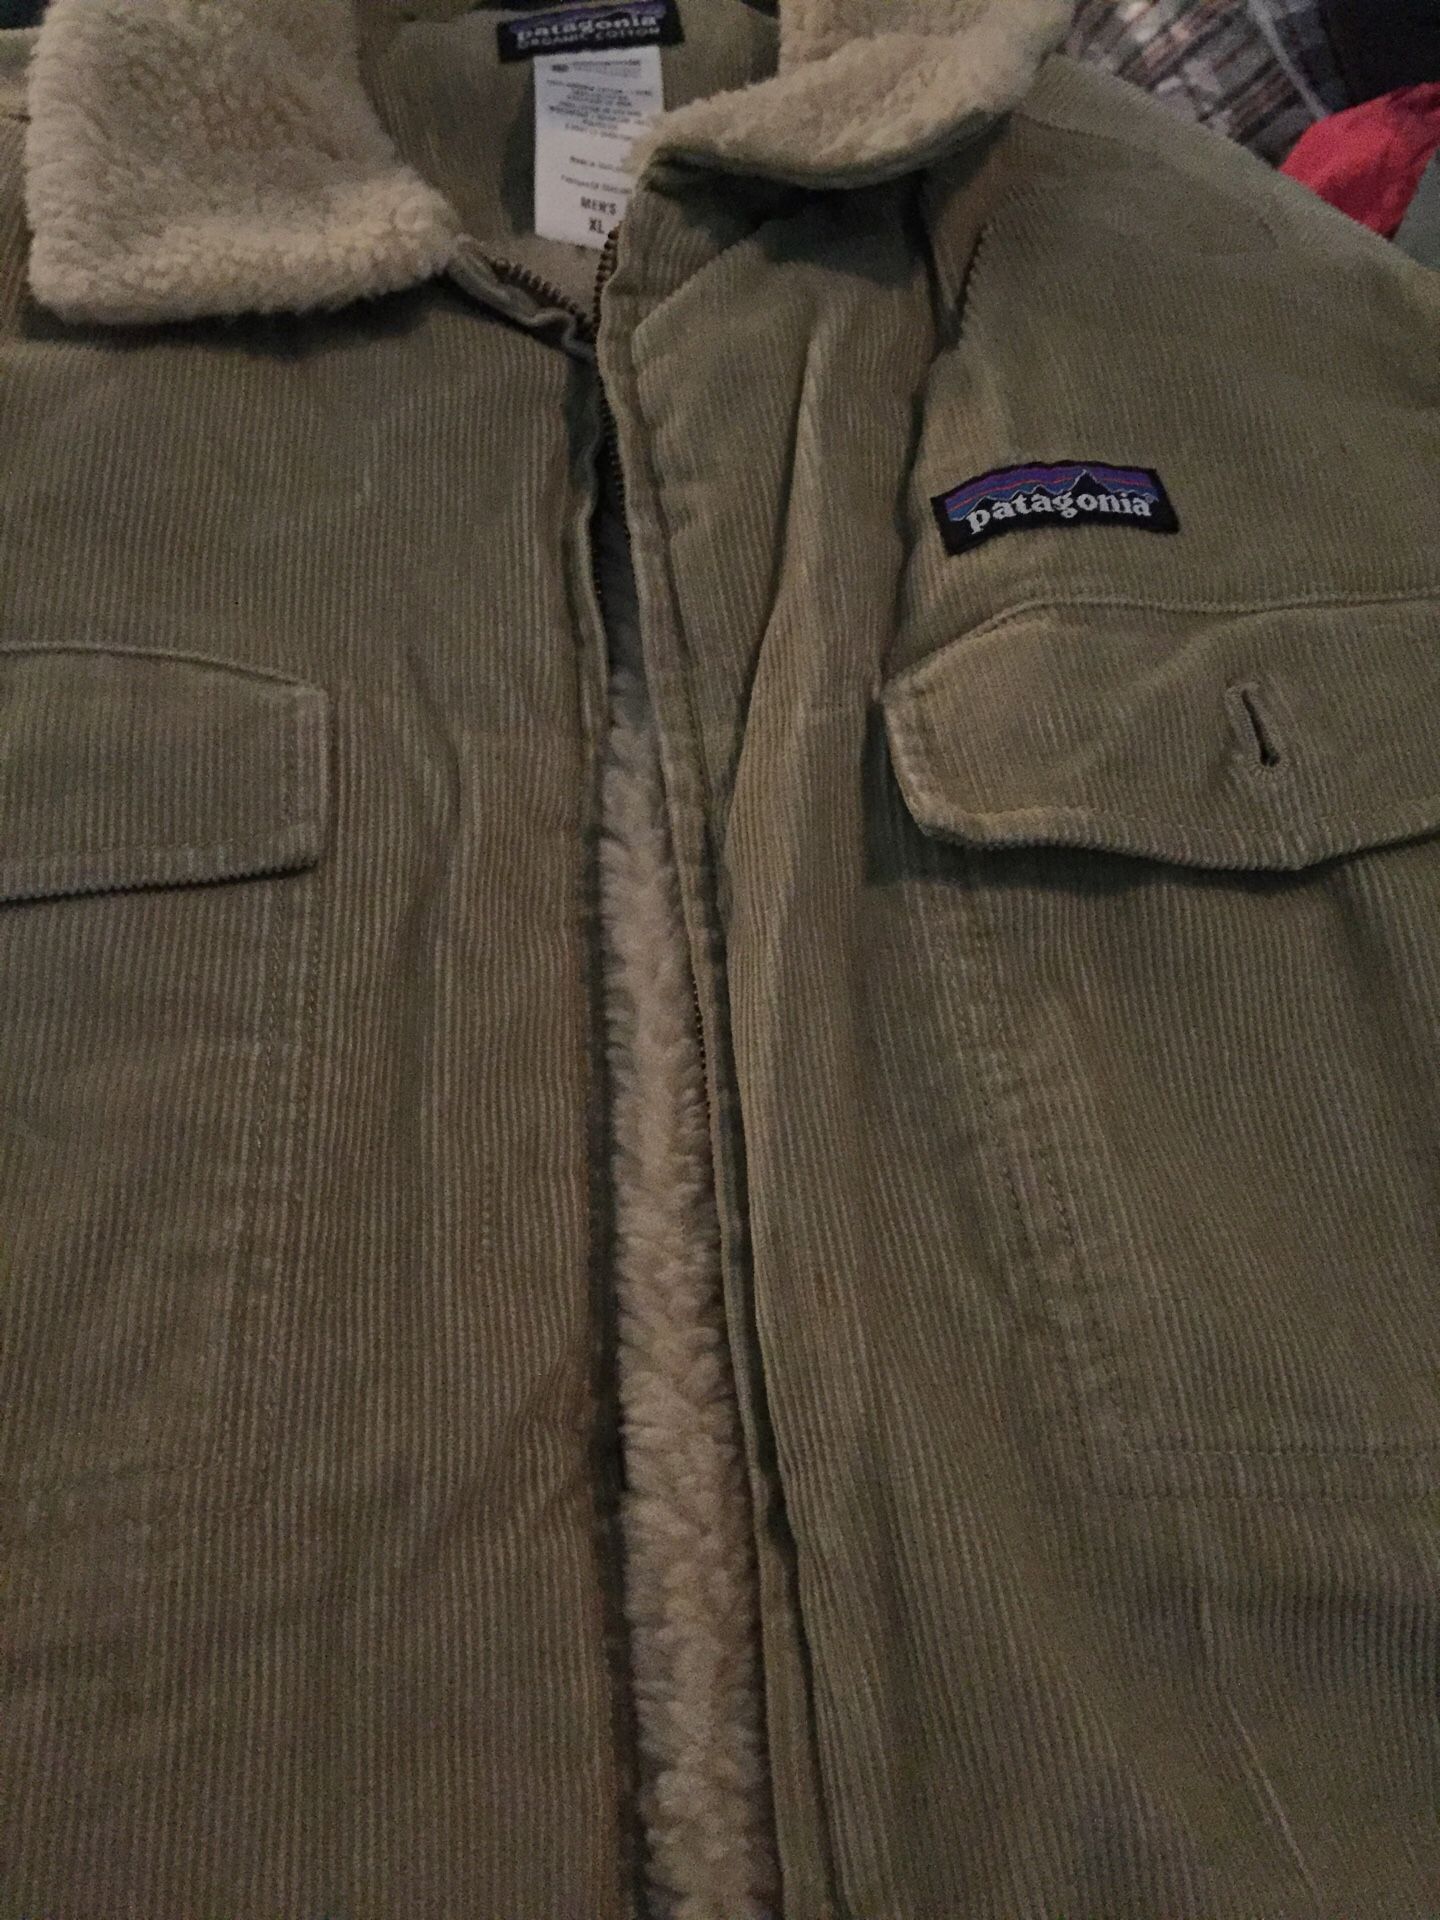 Warm Patagonia jacket